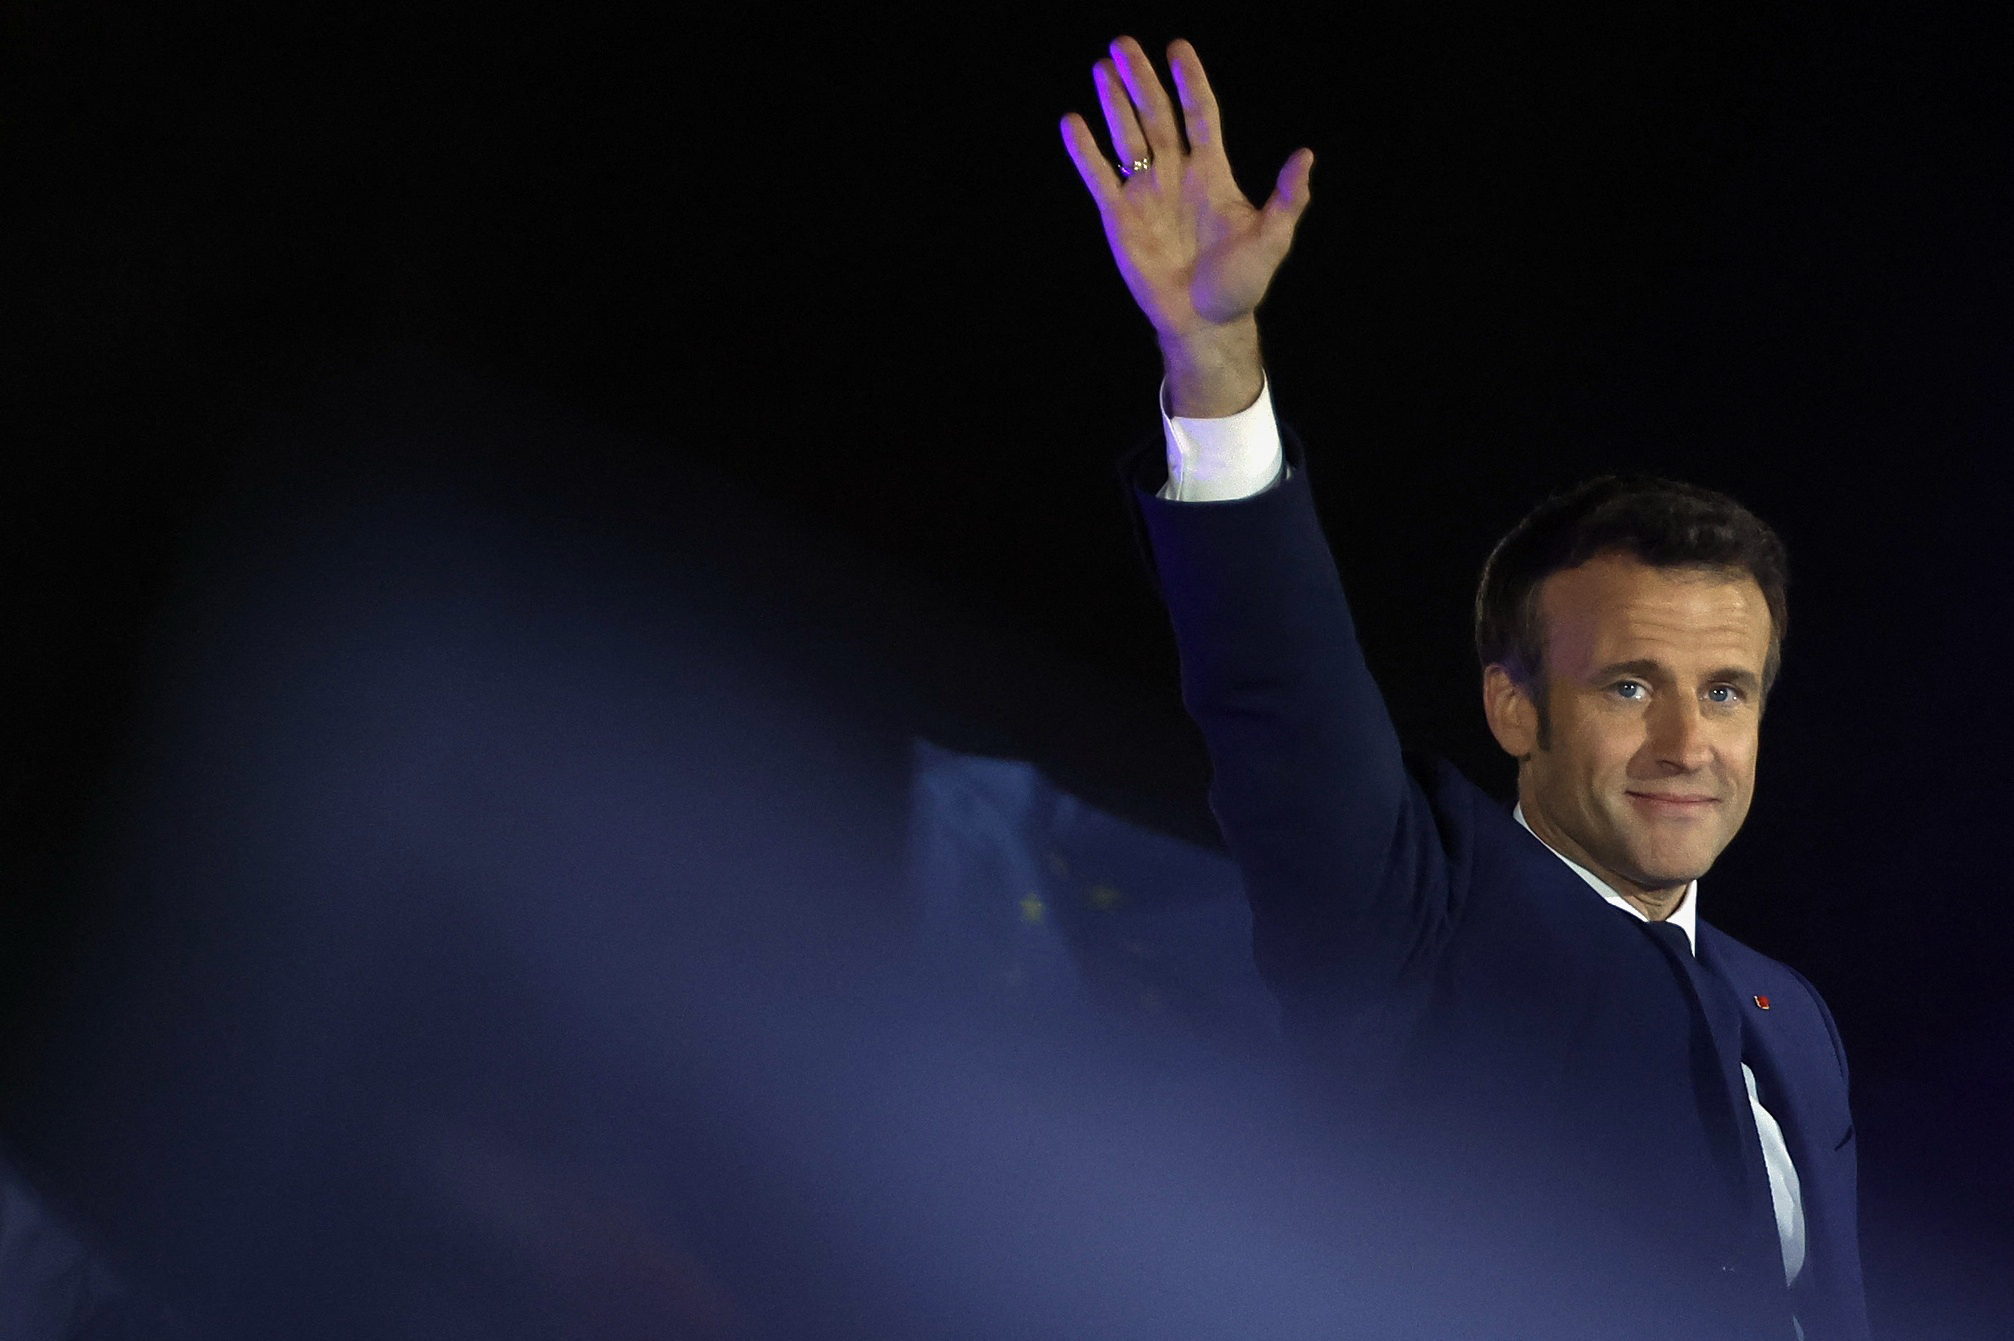 Γαλλικές εκλογές: Μεγάλη αλλά πύρρειος η νίκη Μακρόν επί της Λε Πεν – Το μεγάλο στοίχημα της επόμενης μέρας